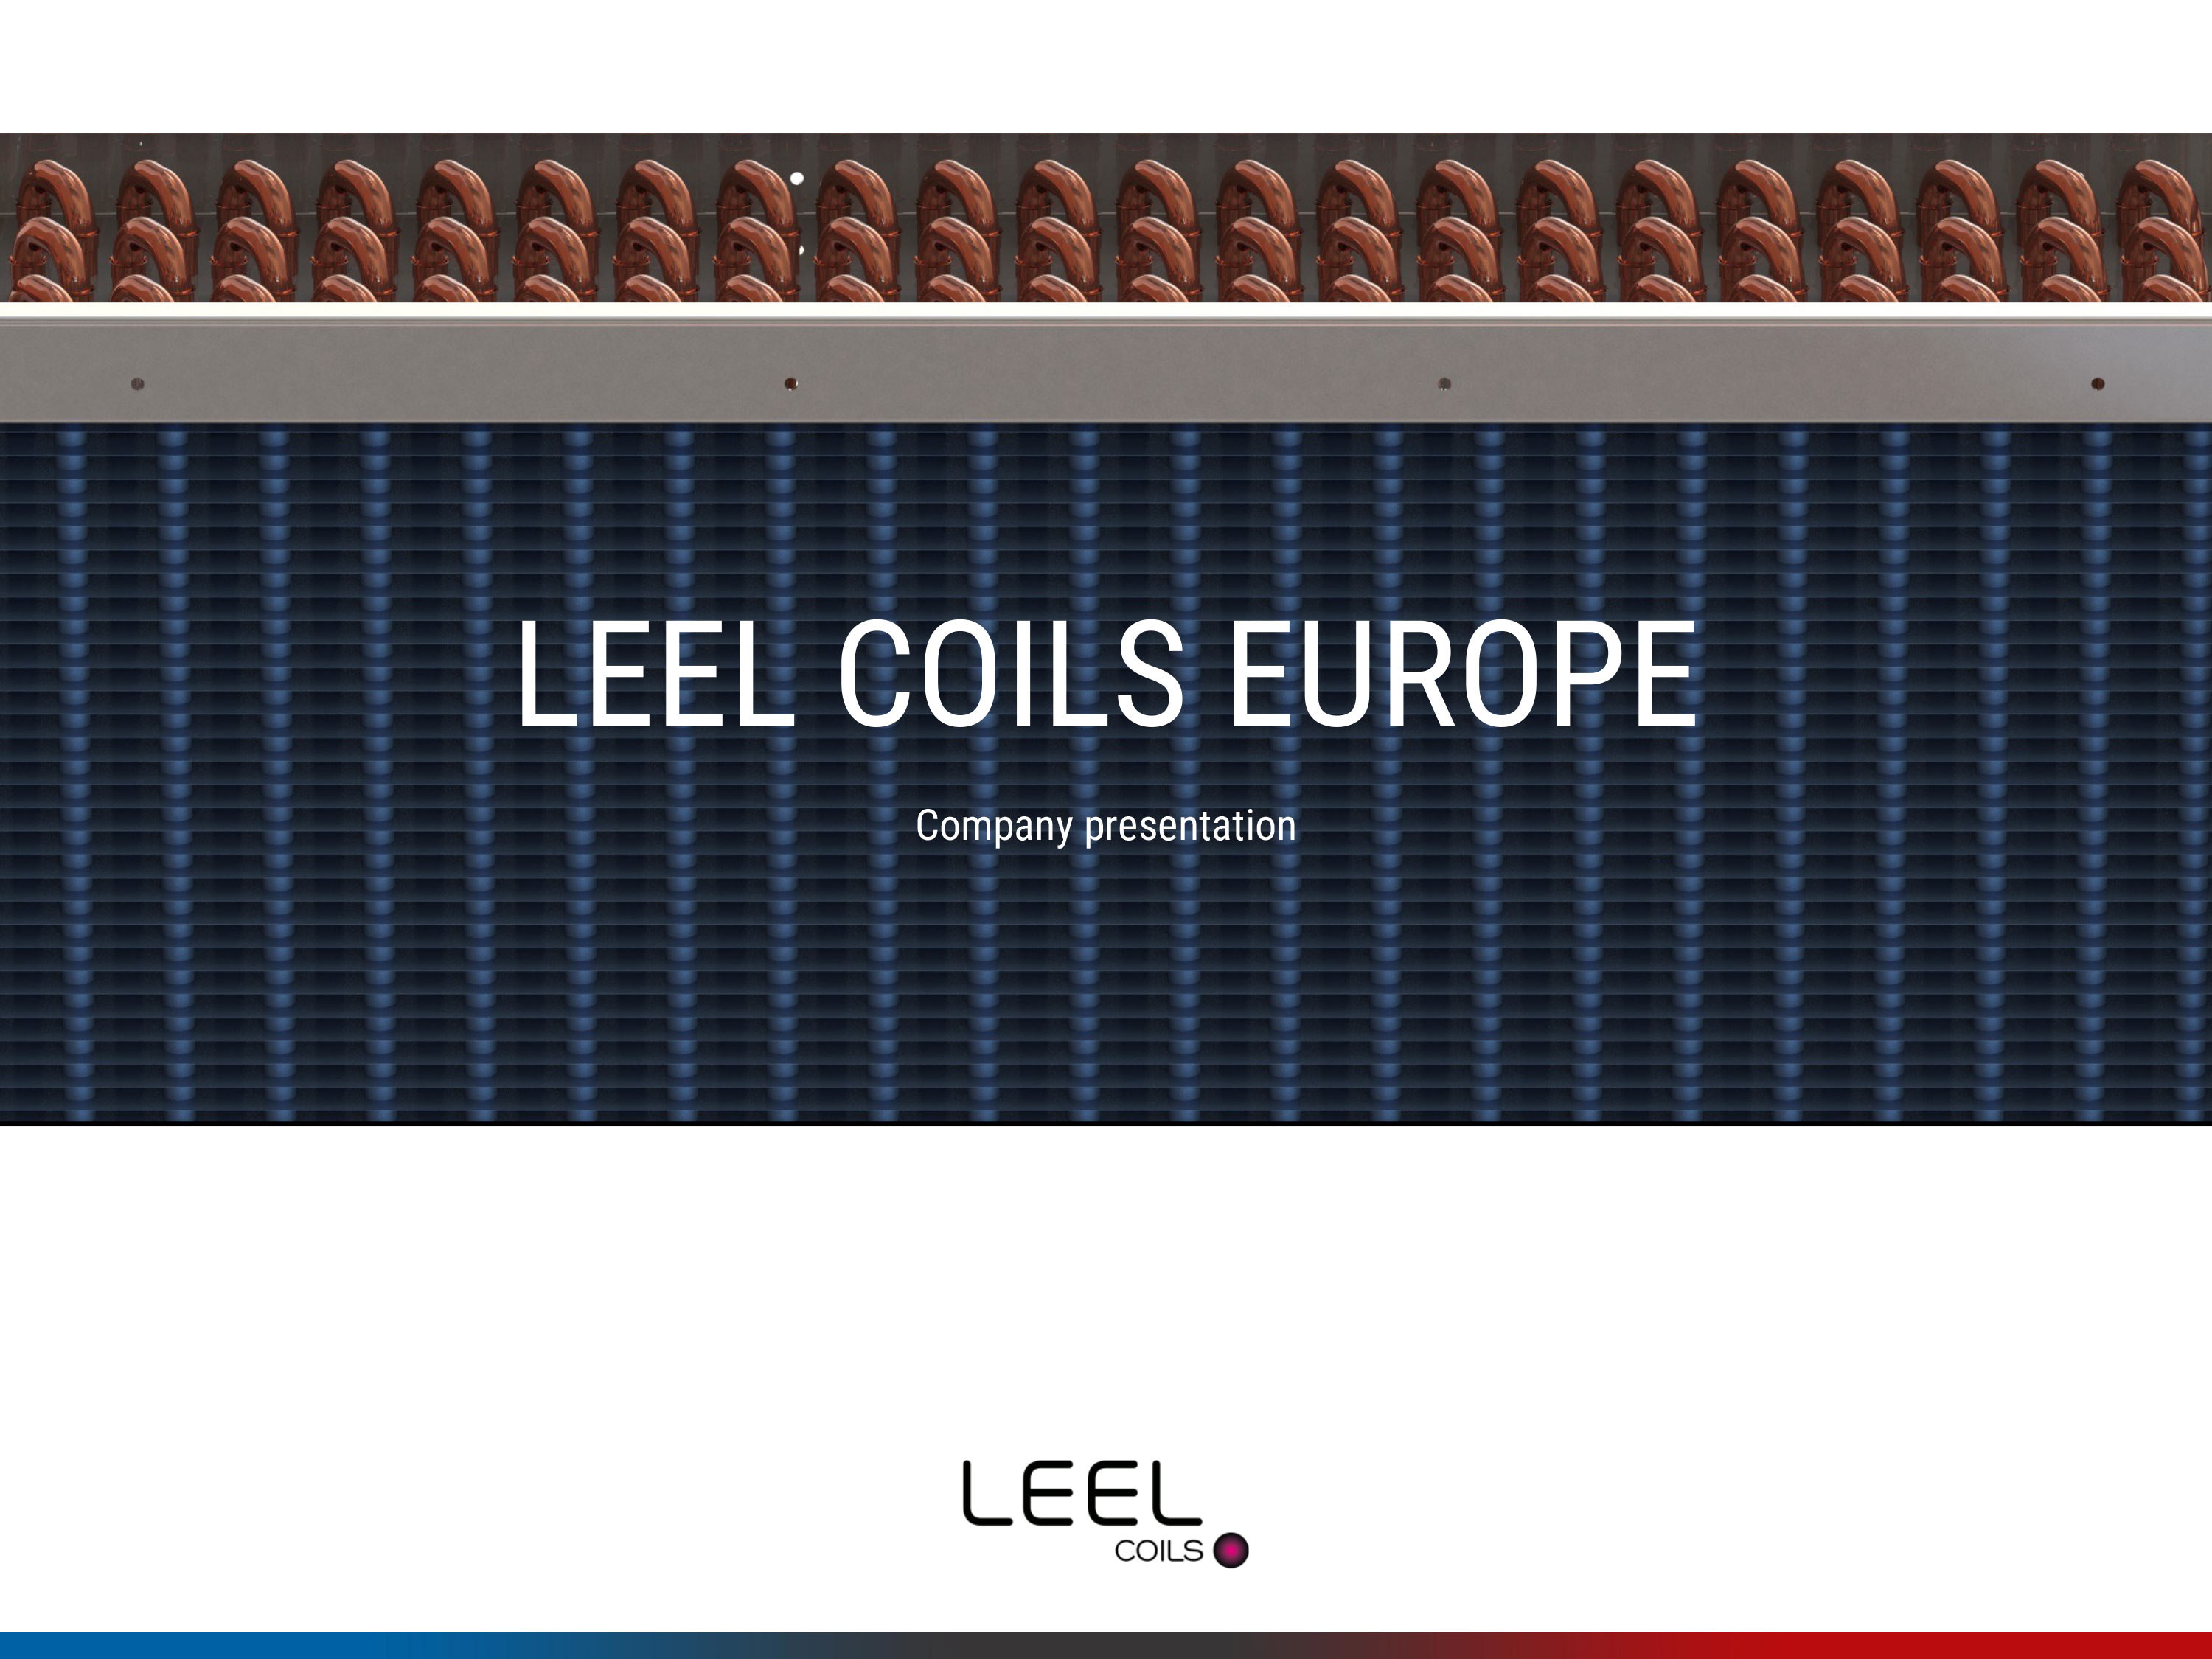 LEEL COILS EUROPE 2021_Regis Deleage